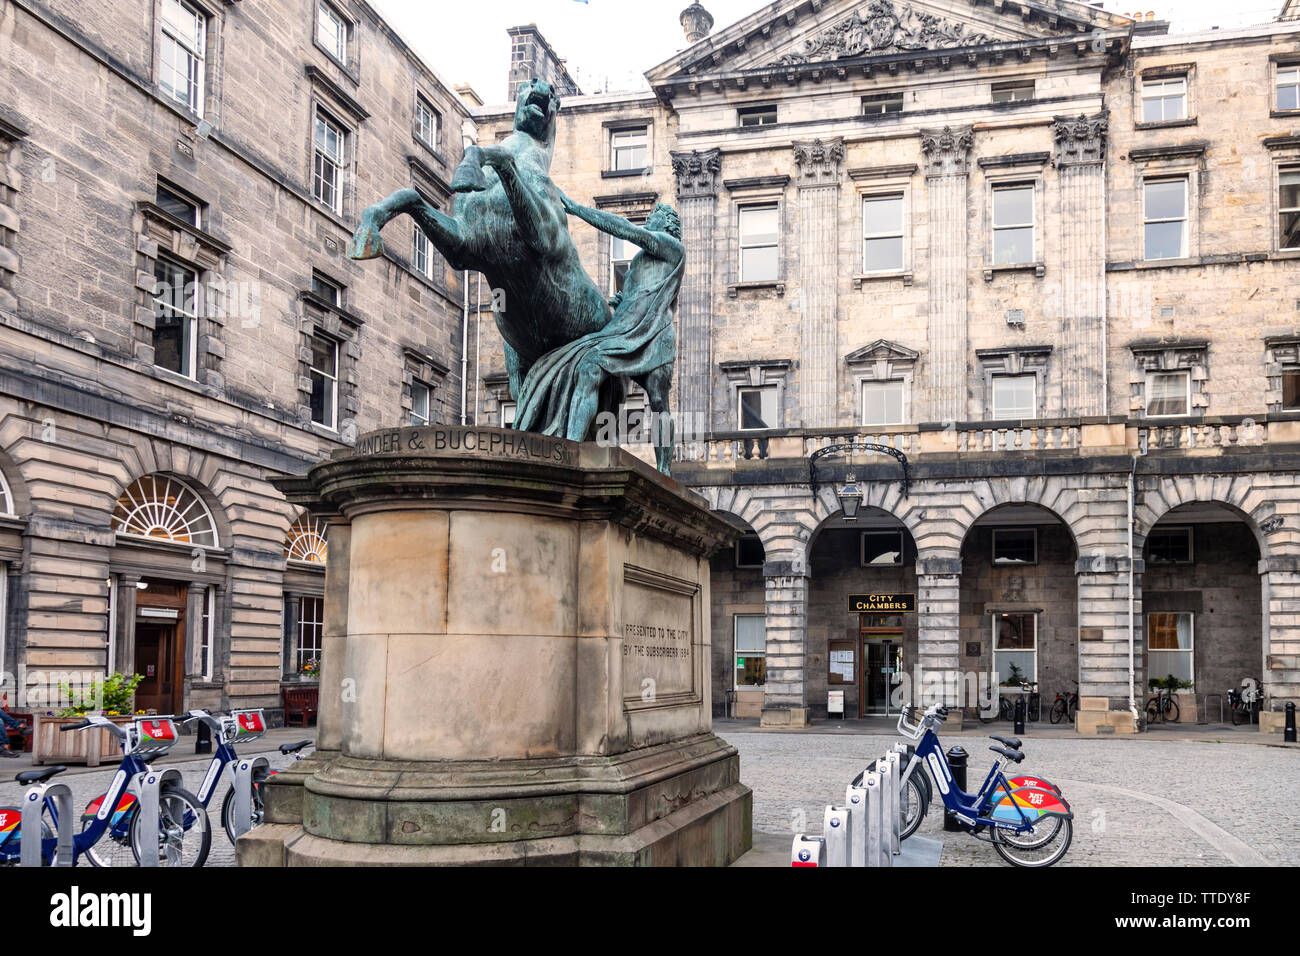 La statua (1884, Sir John Steell) di Alexander addomesticare Bucepalus nel quadrilatero della Edinburgh City Chambers, (1761, John Adam) off the Royal Mile. Foto Stock